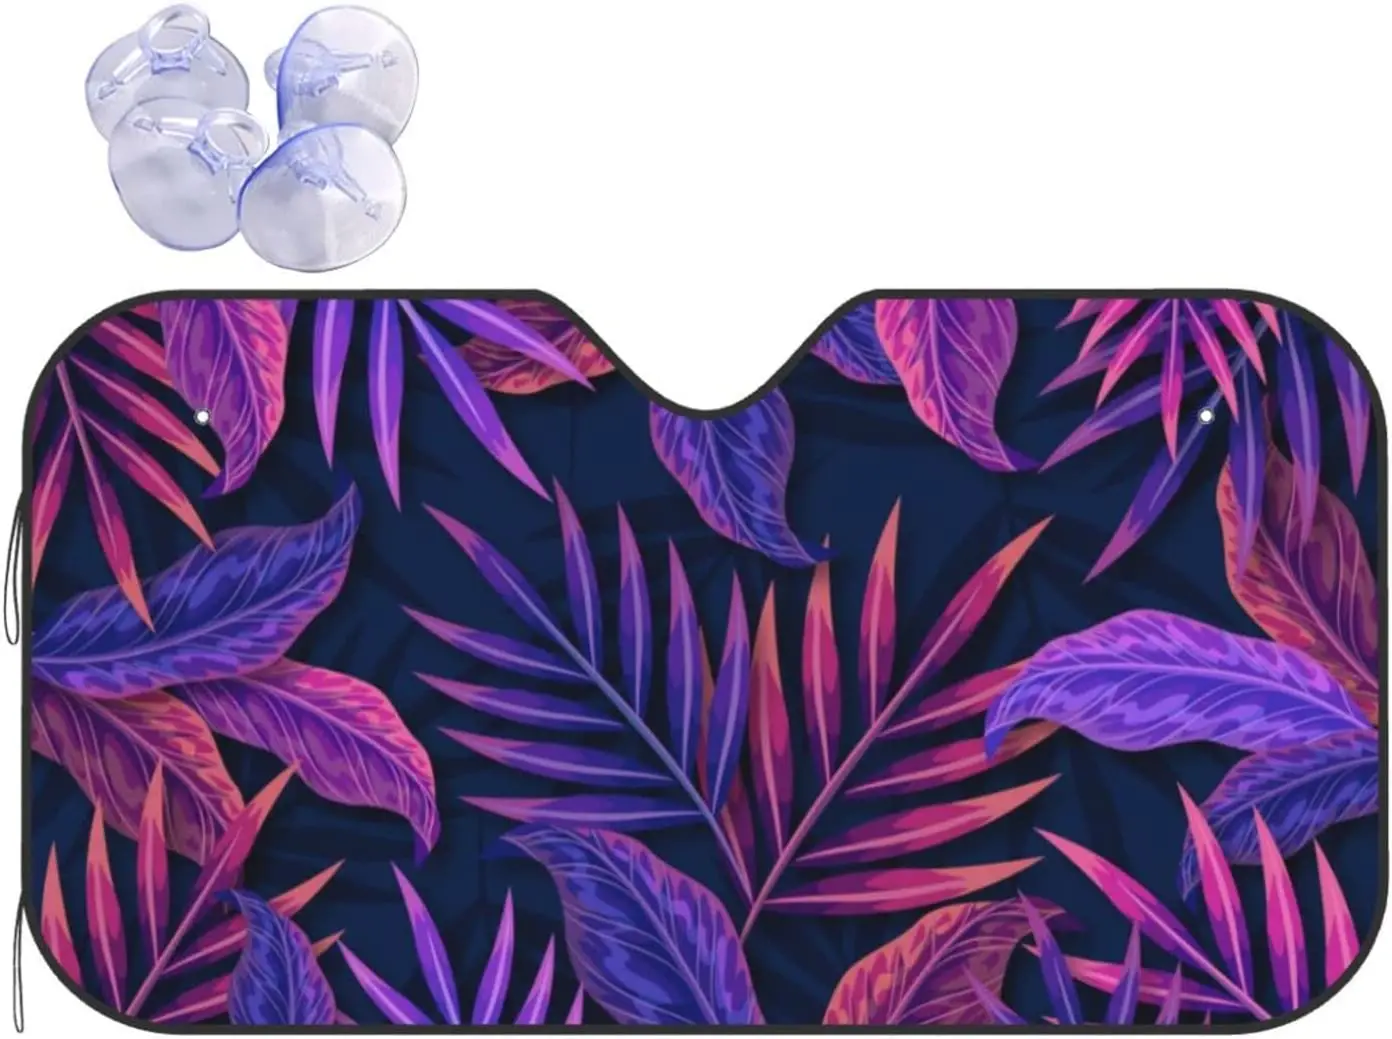 

Автомобильный солнцезащитный козырек на лобовое стекло с тропическими фиолетовыми листьями, складной автомобильный солнцезащитный козырек для грузовика, внедорожника, Прохладный чехол для вашего автомобиля